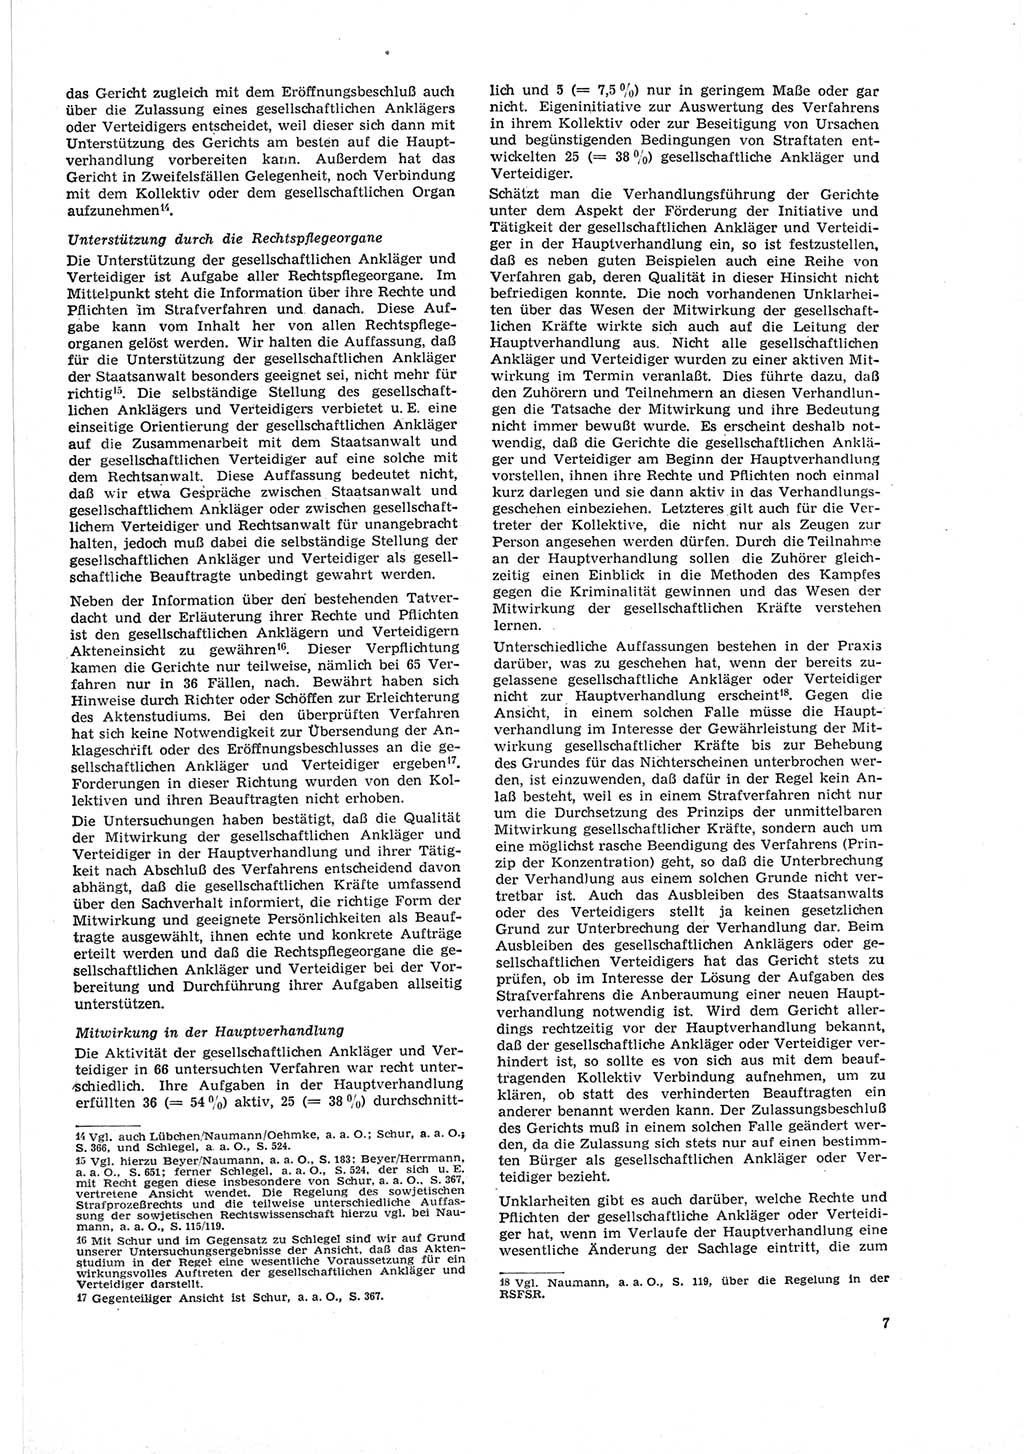 Neue Justiz (NJ), Zeitschrift für Recht und Rechtswissenschaft [Deutsche Demokratische Republik (DDR)], 19. Jahrgang 1965, Seite 7 (NJ DDR 1965, S. 7)